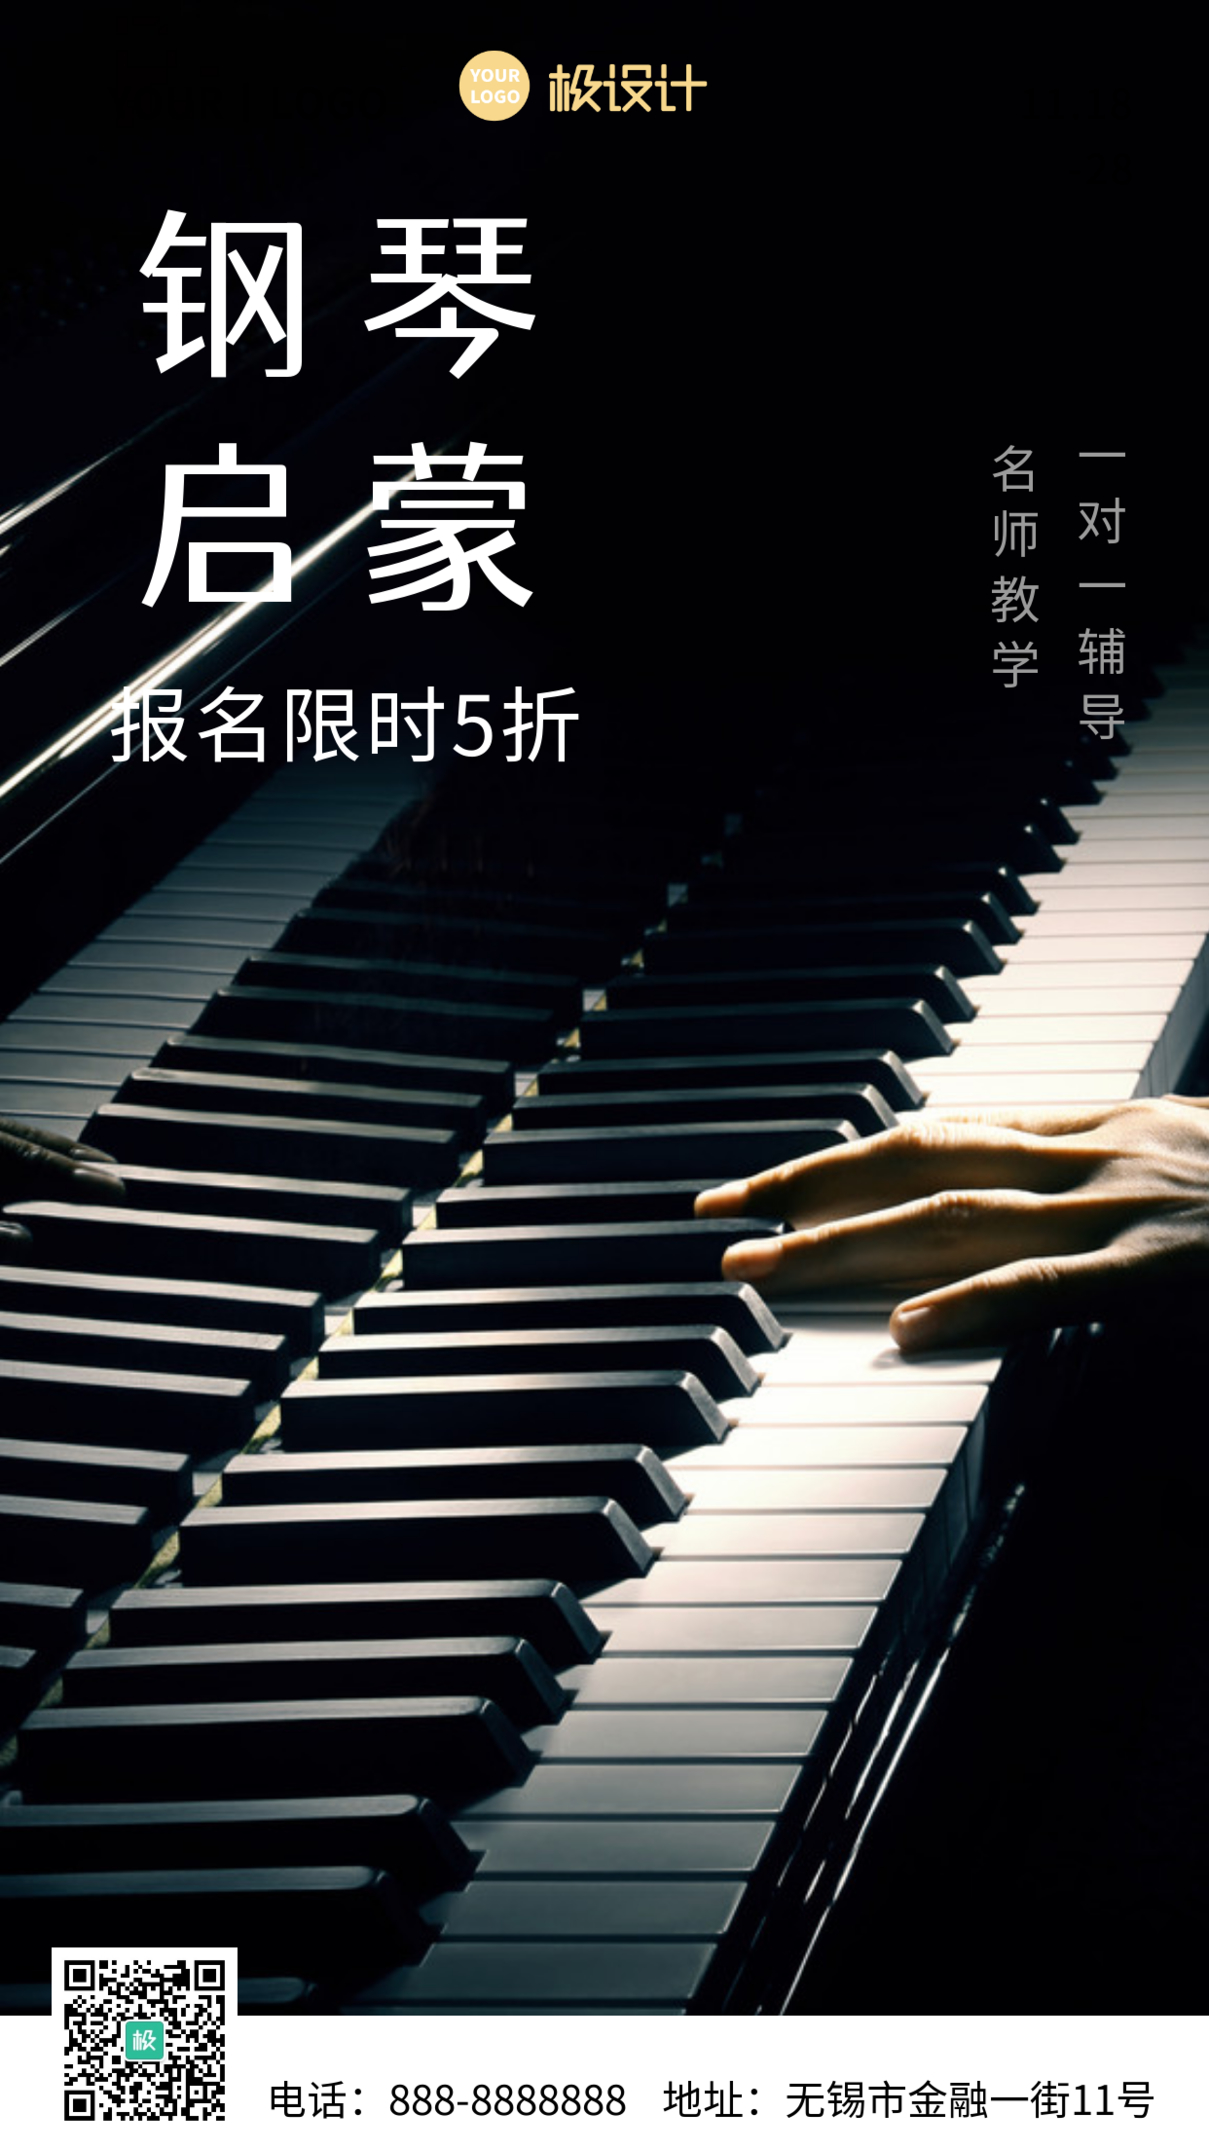 钢琴启蒙培训宣传黑色白色简约手机摄影海报